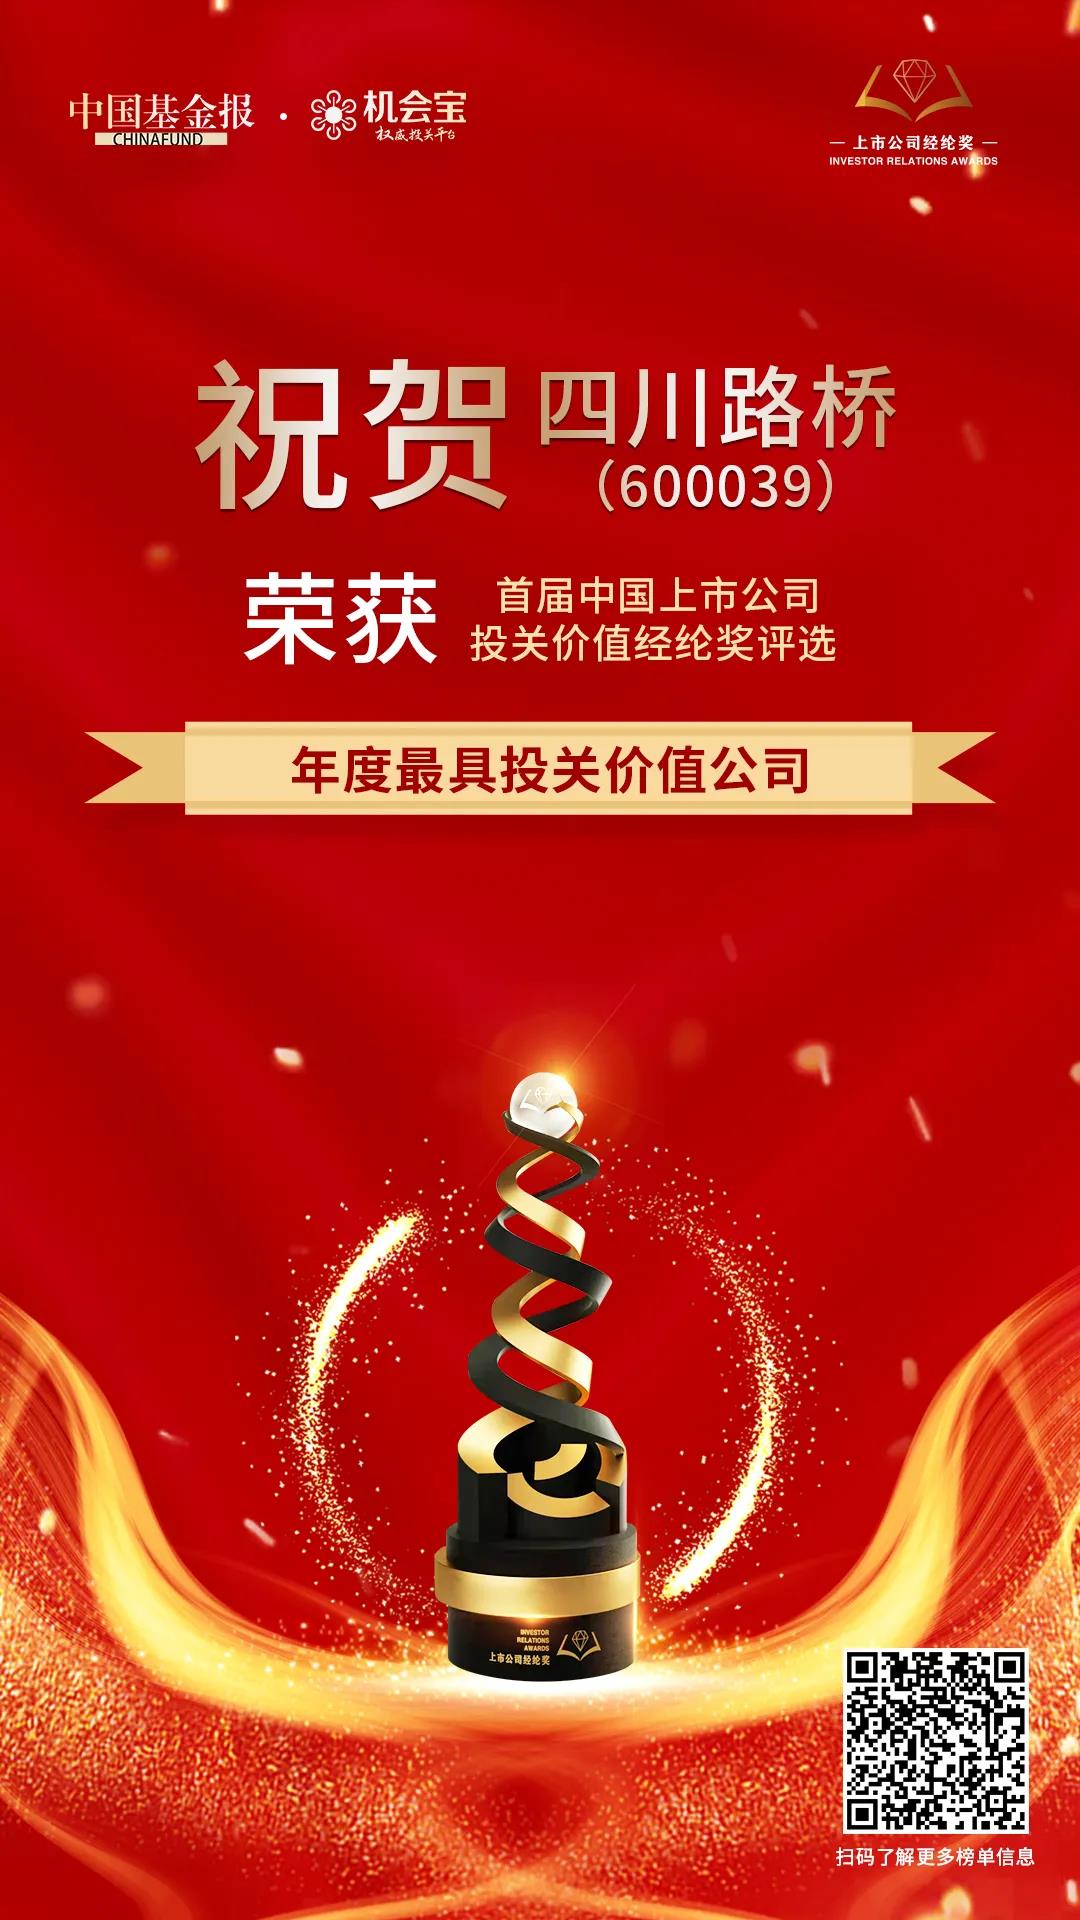 四川路桥荣获首届中国上市公司经纶奖 “年度最具投关价值公司”